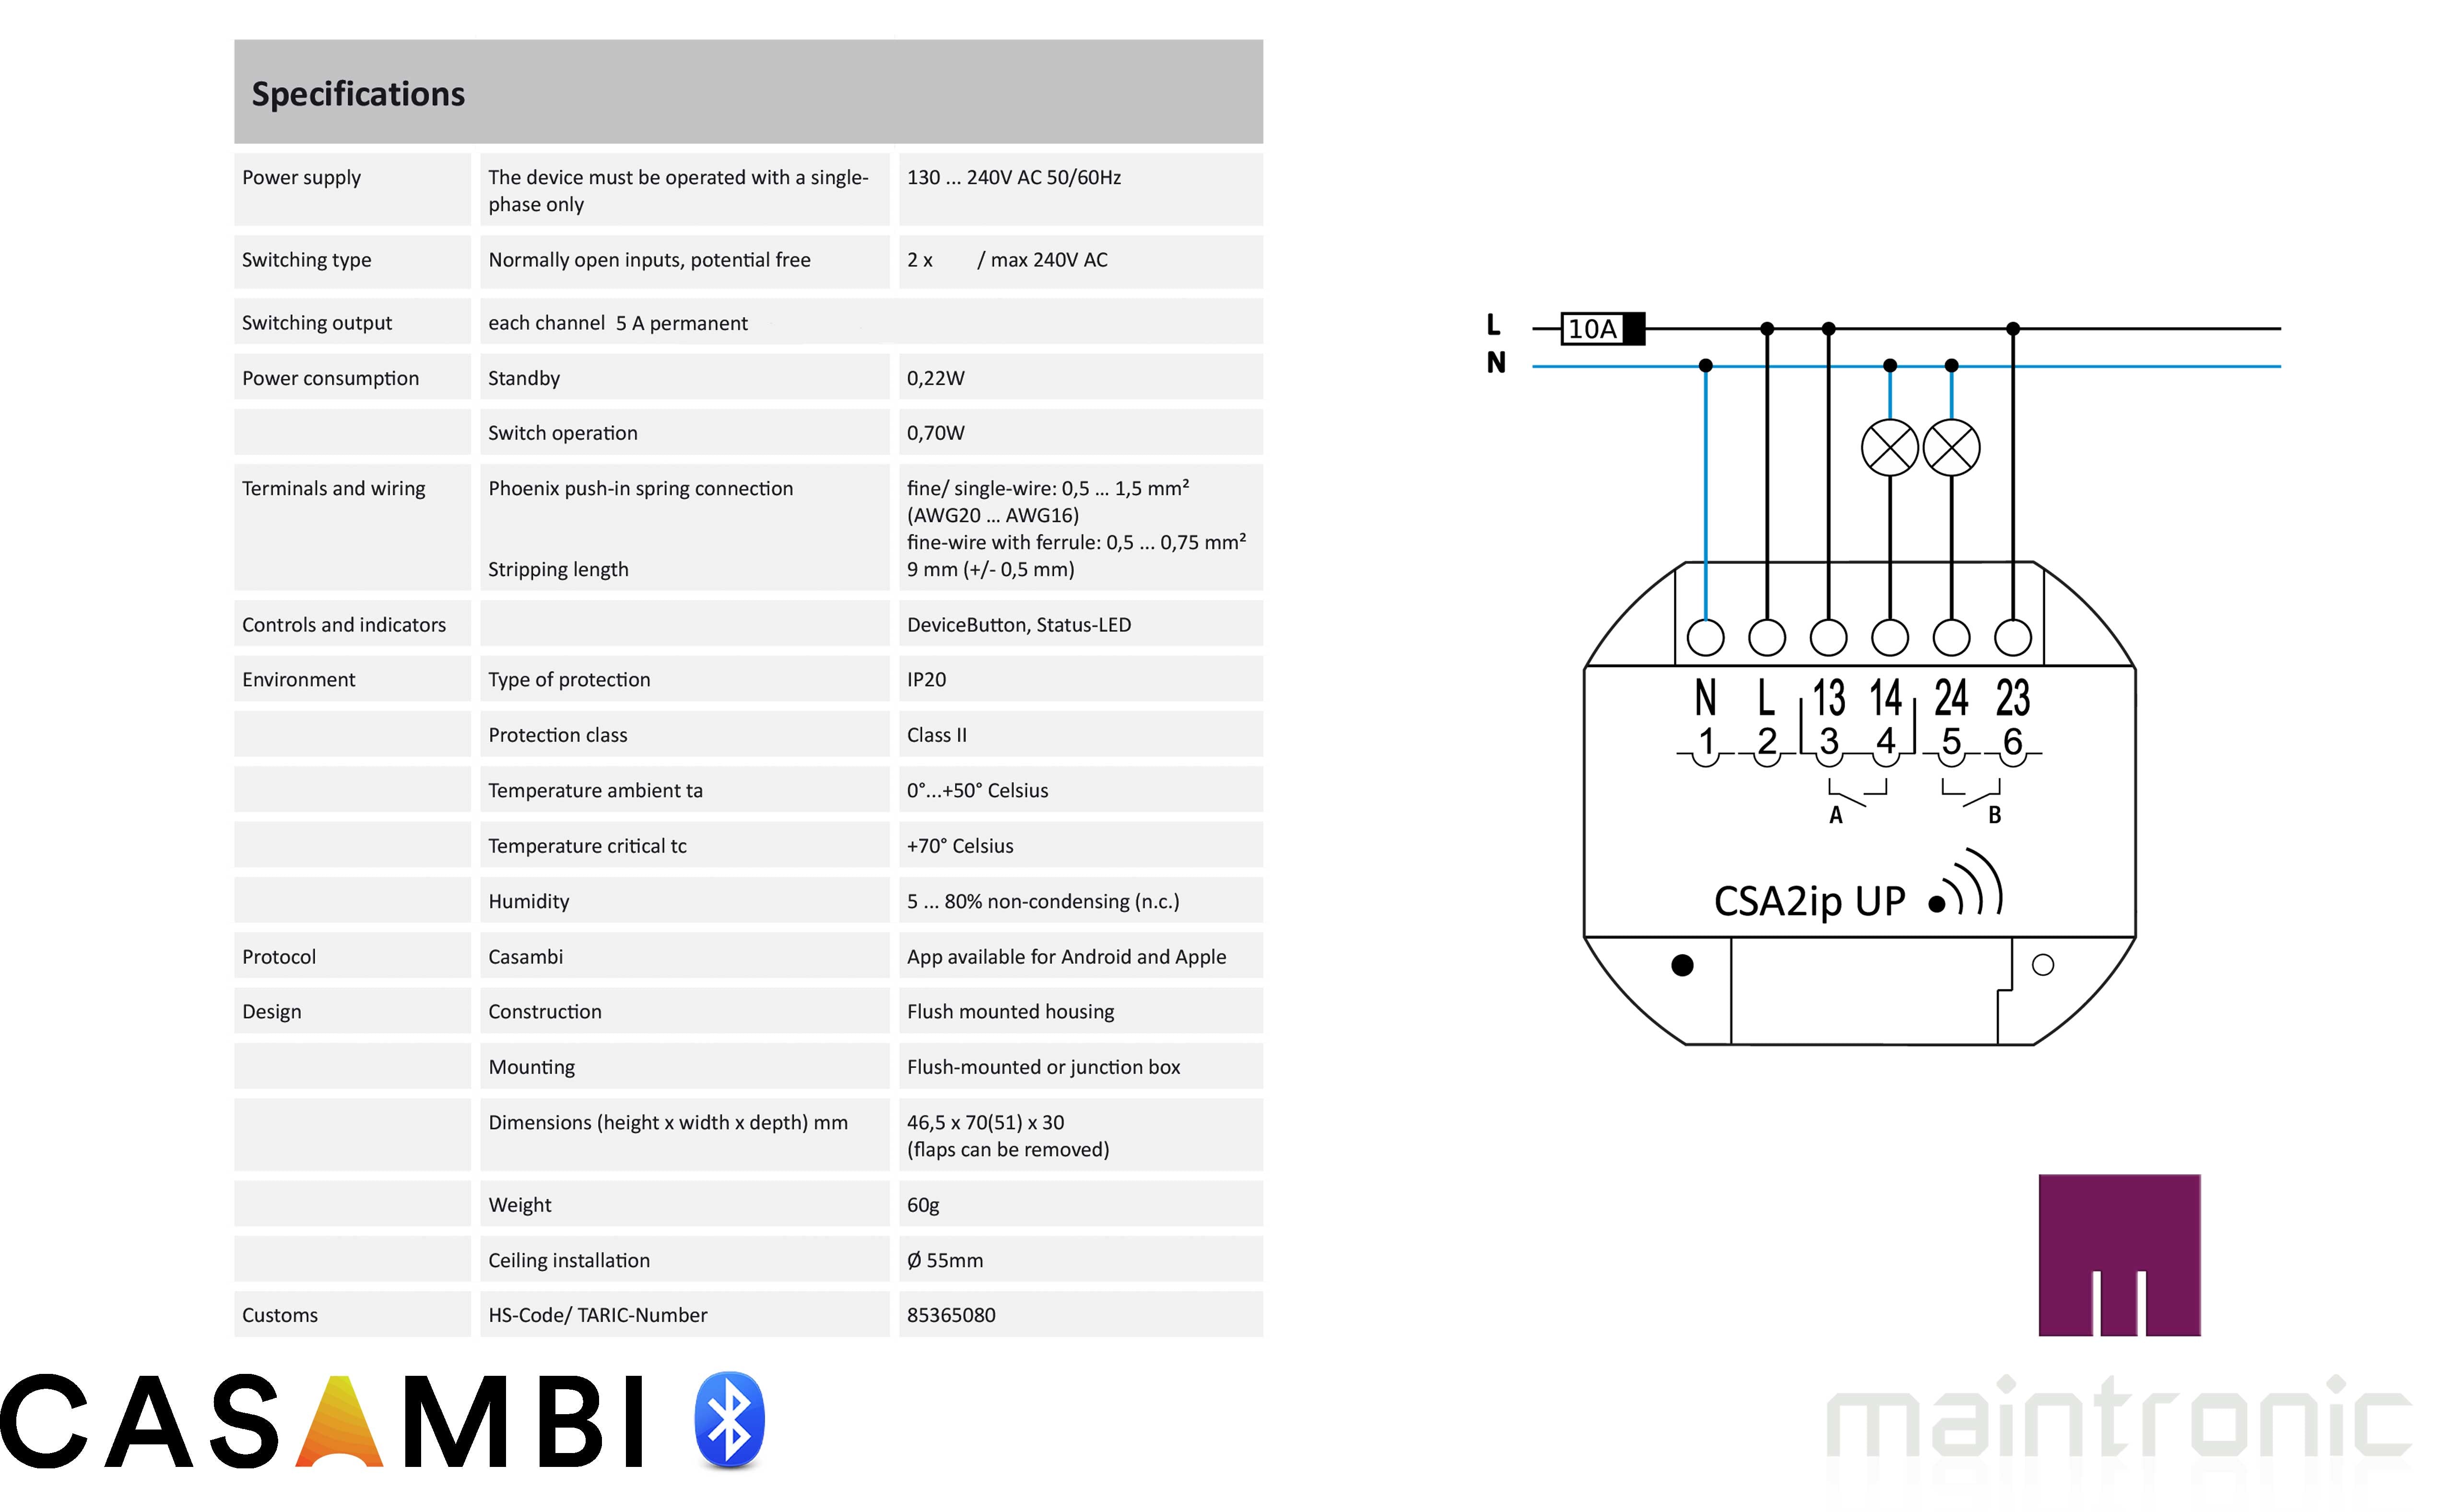 Maintronic-Casambi-Switch-Actuator-CSA2iPup-specs